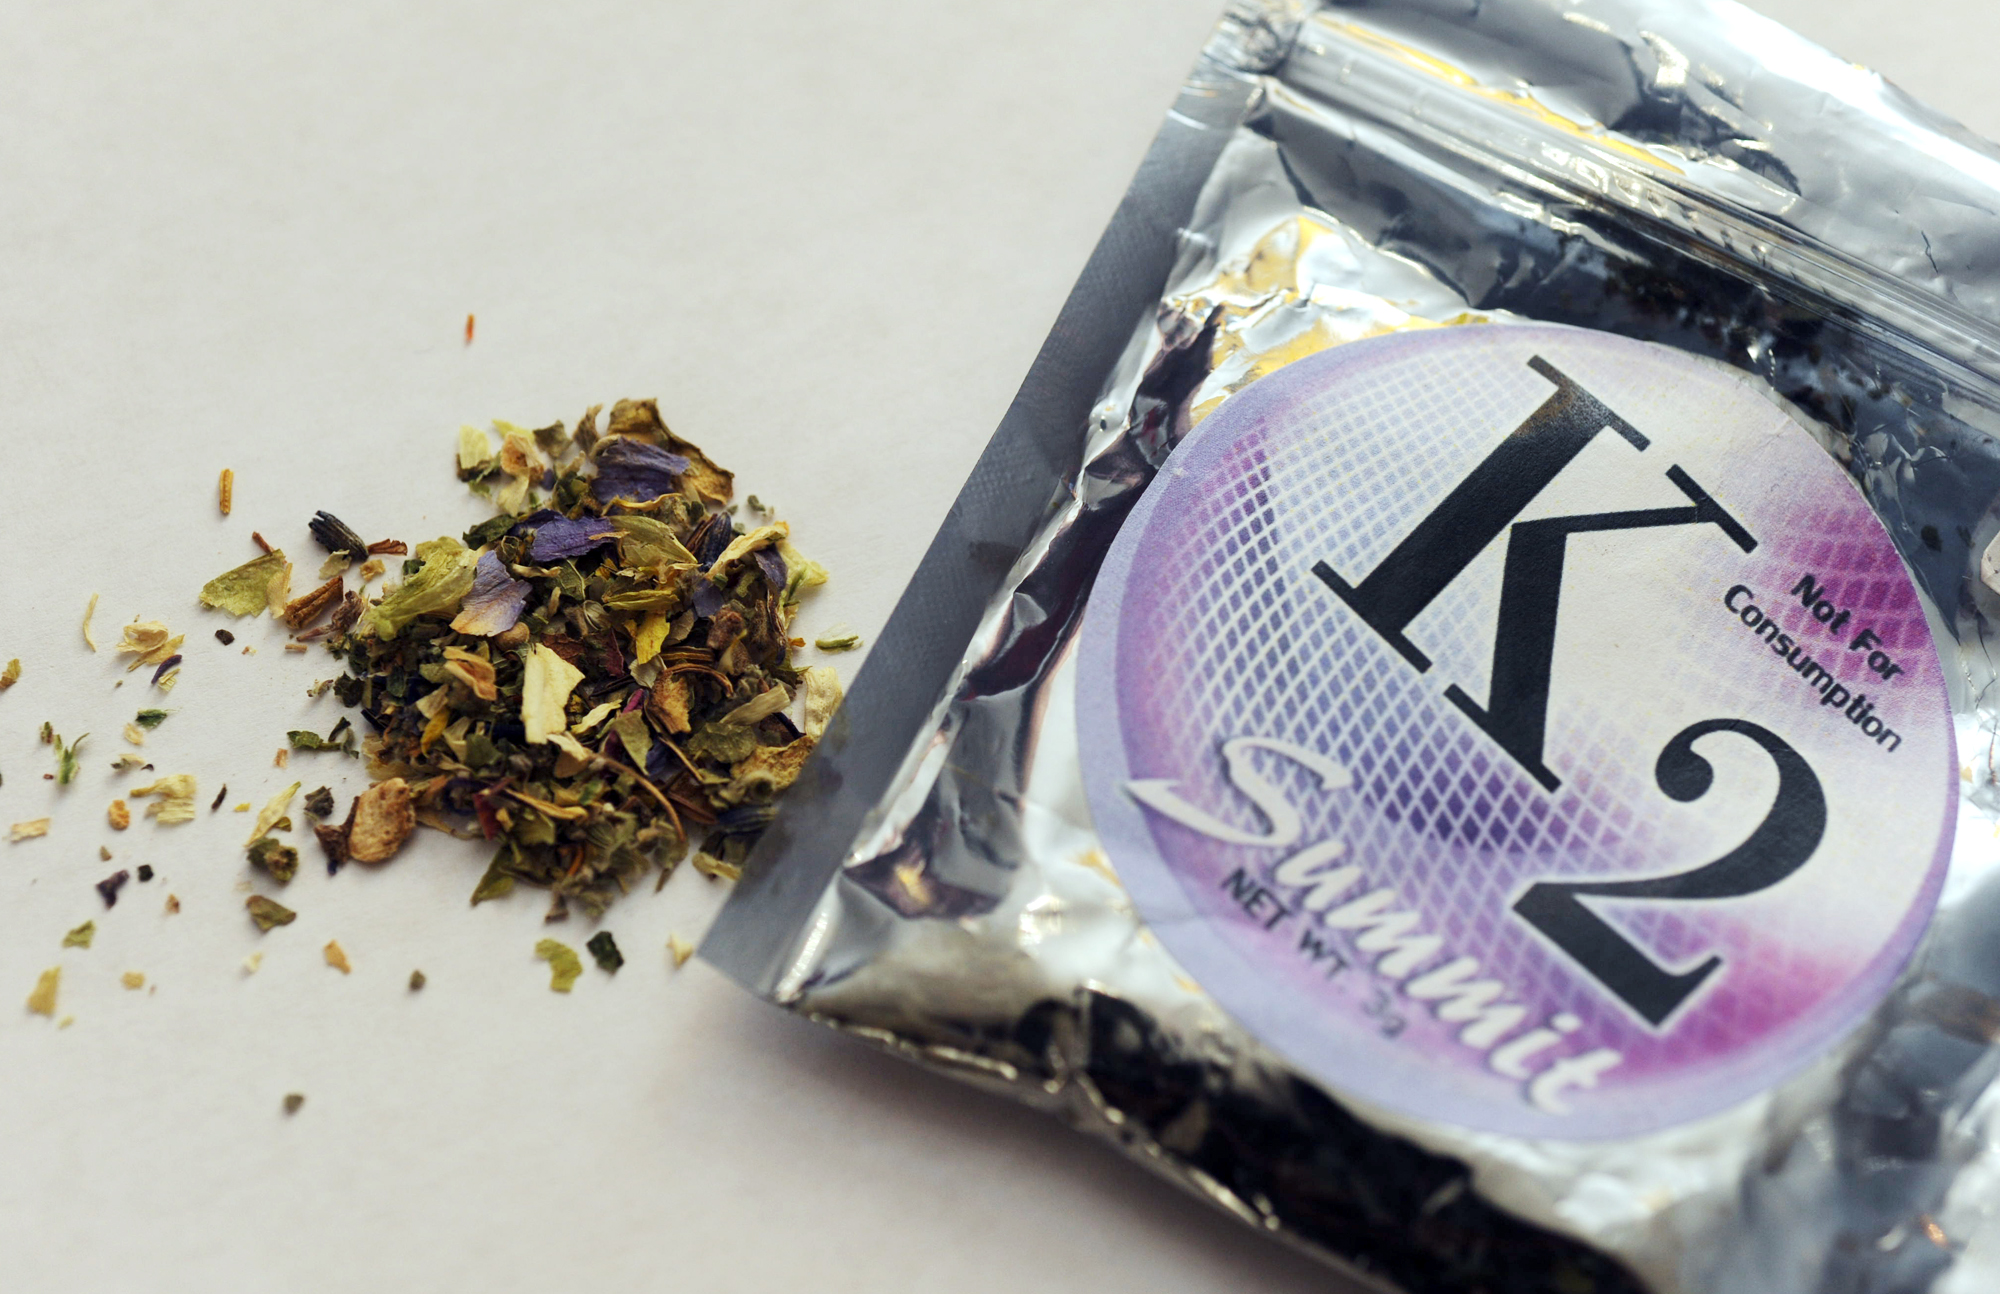 K2, synthetic marijuana